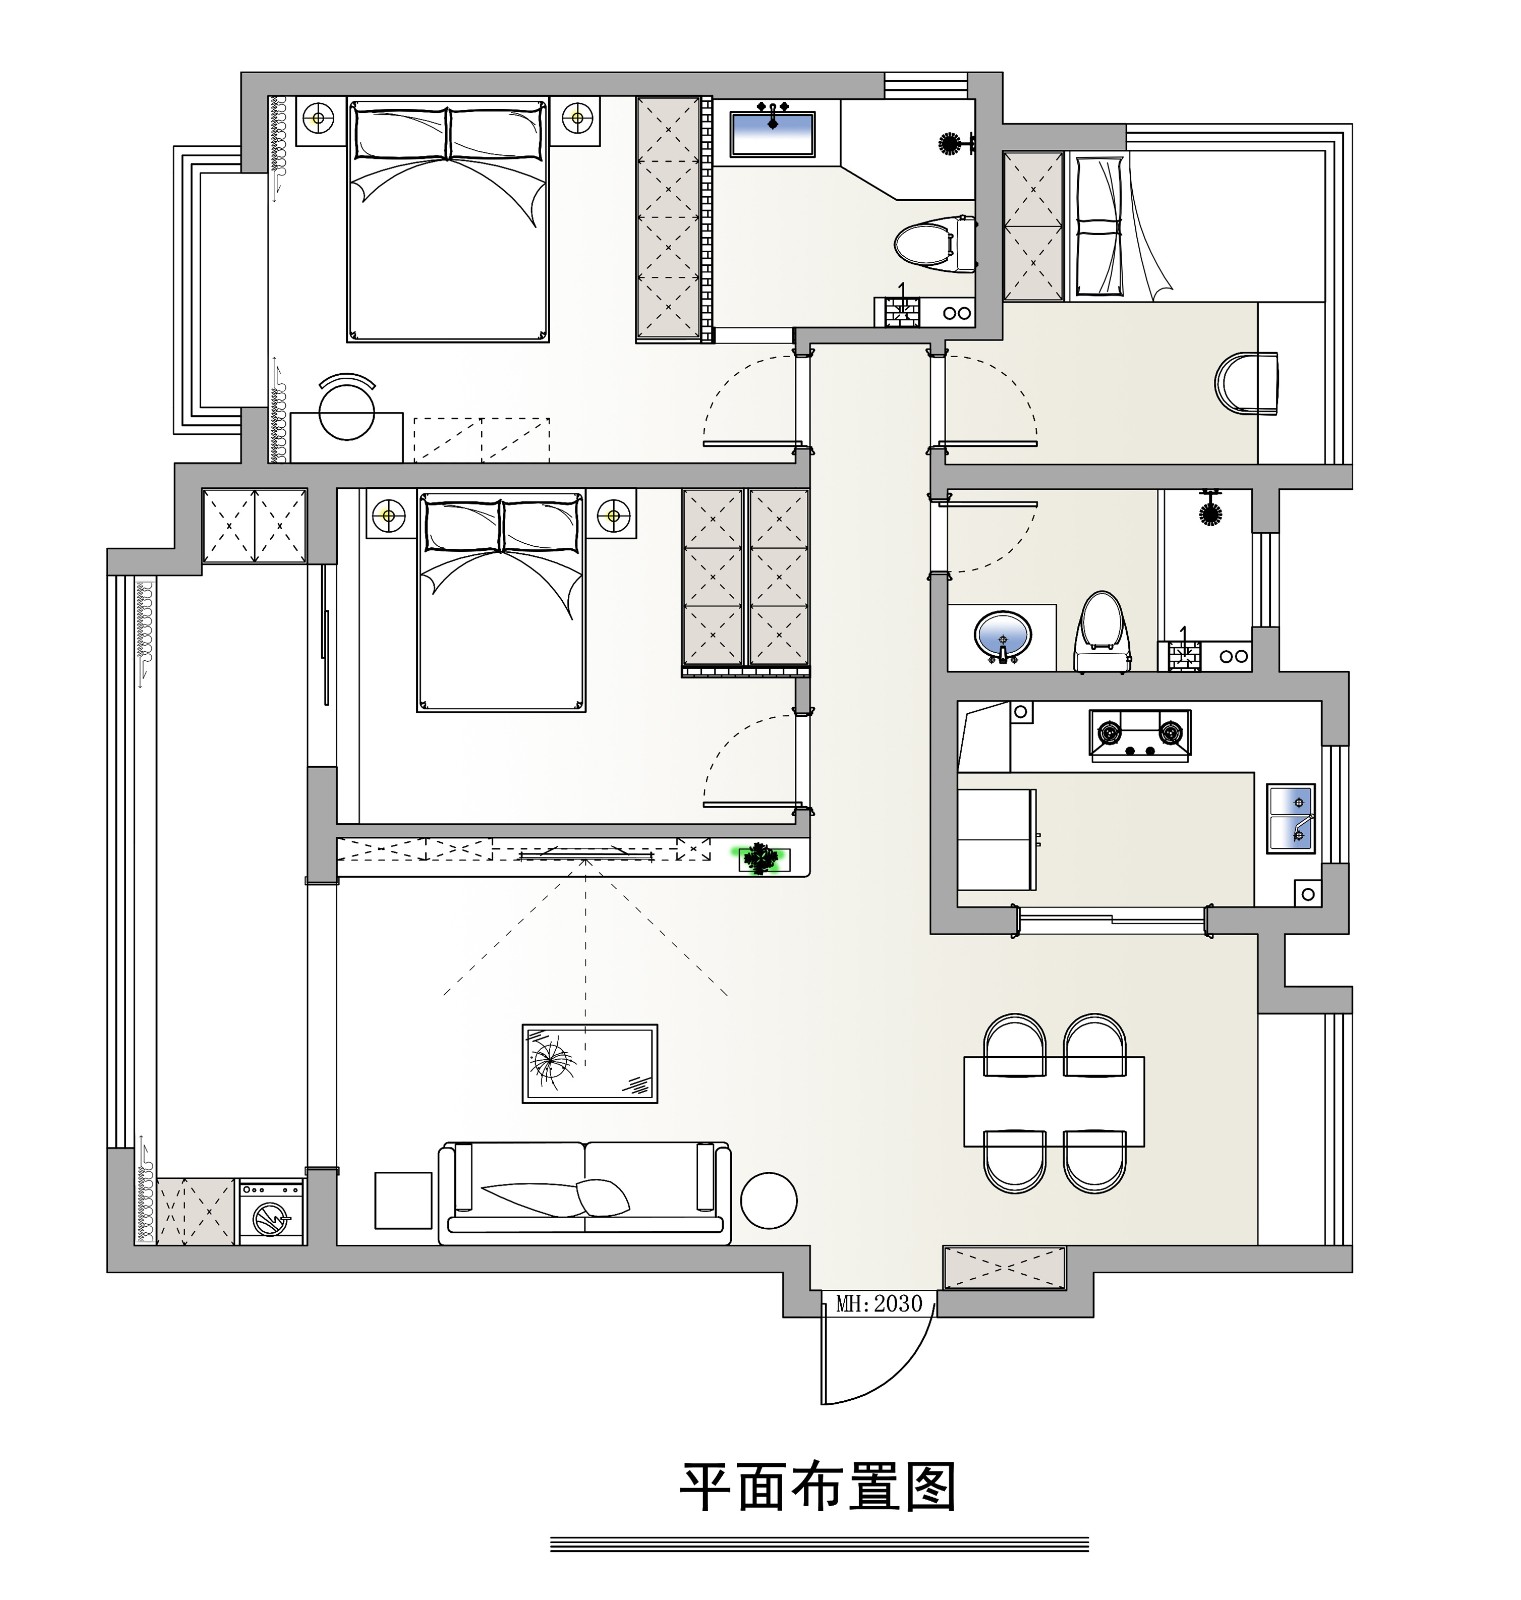 120现代三房装修效果图,舒适生活的精致。装修案例效果图-美广网(图1)